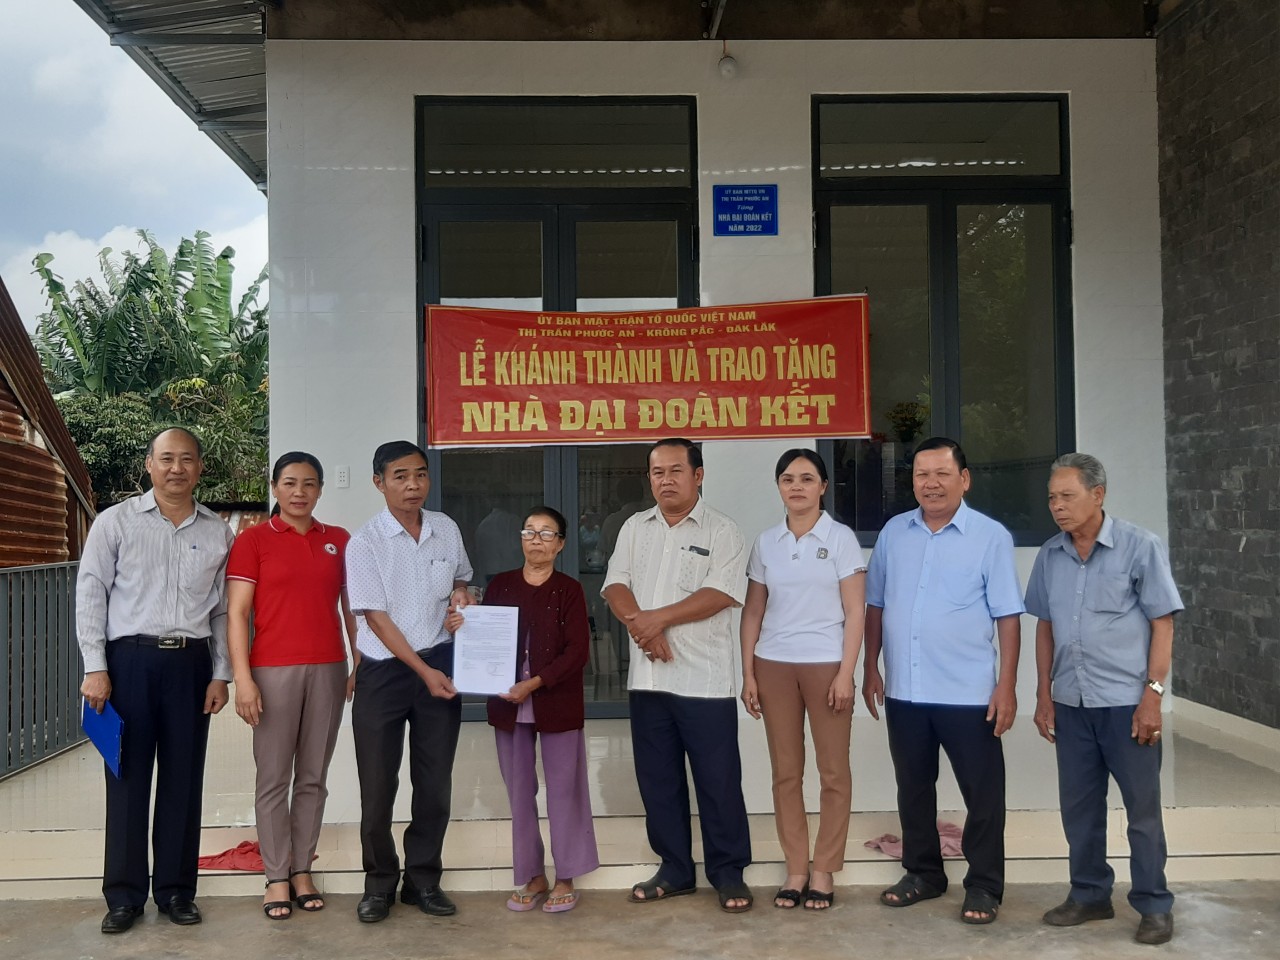 Đảng ủy- HĐND-UBND- UB MTTQ Việt Nam thị trấn Phước An  tổ chức lễ tổ chức trao tặng nhà đại đoàn kết cho hộ nghèo tại TDP 16